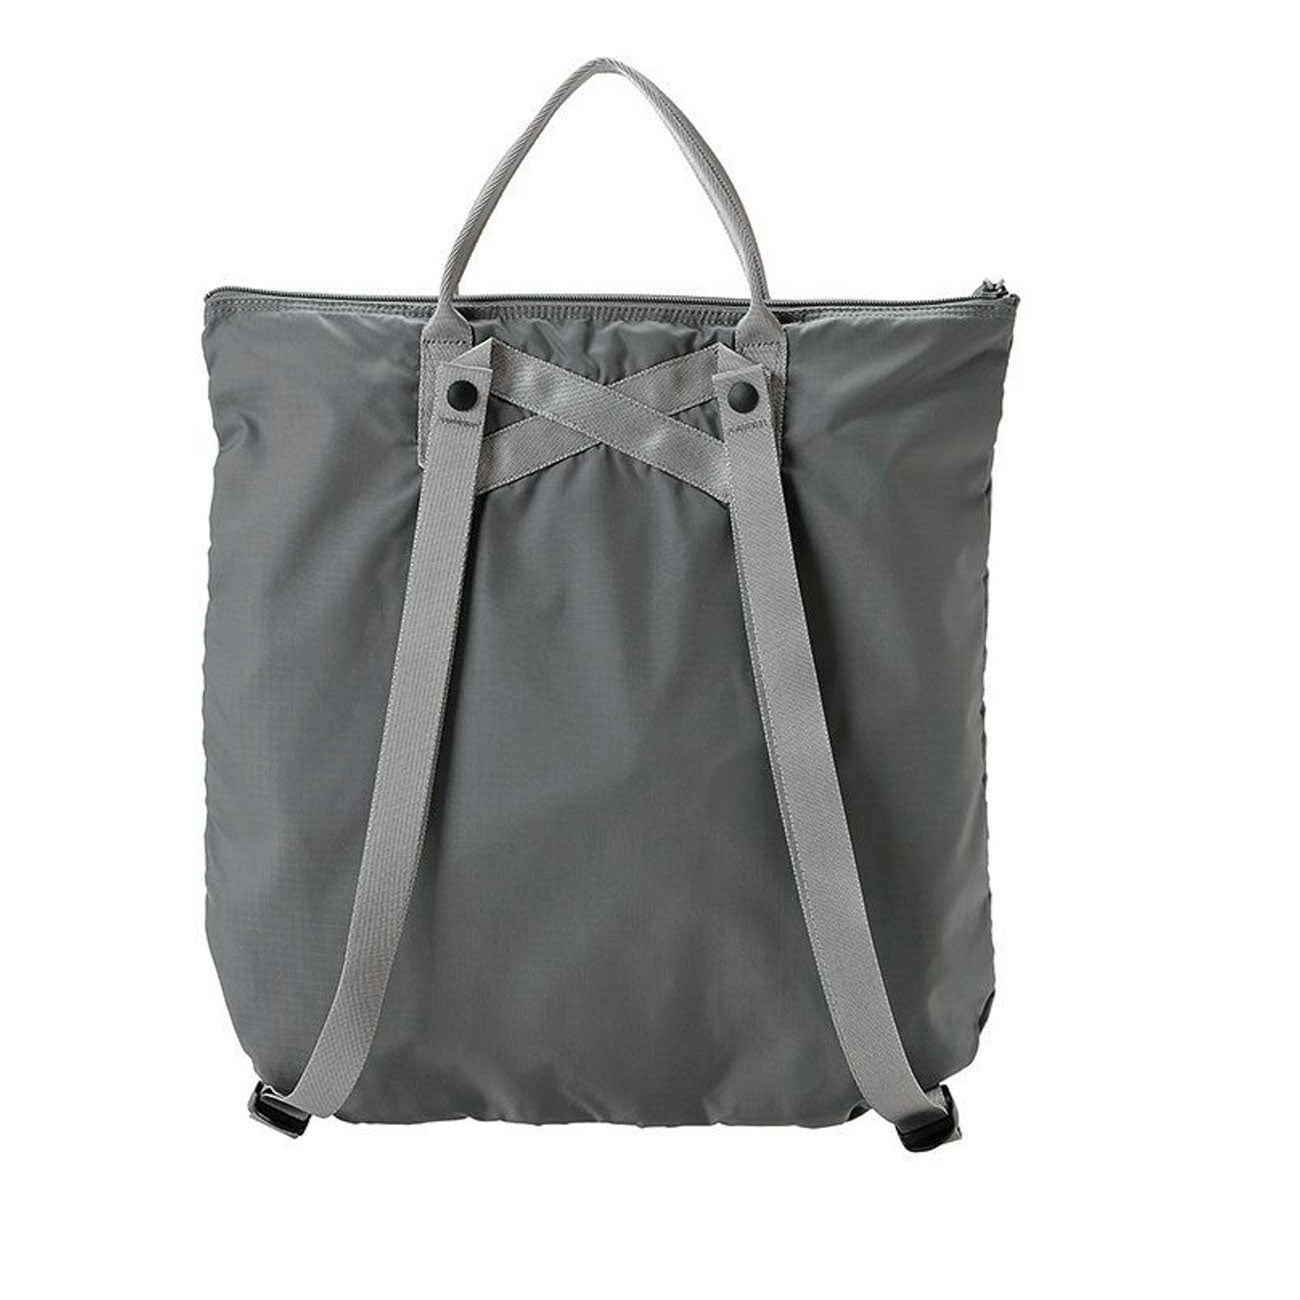 porter by yoshida flex 2 way tote bag (grey) - 385-17502-11